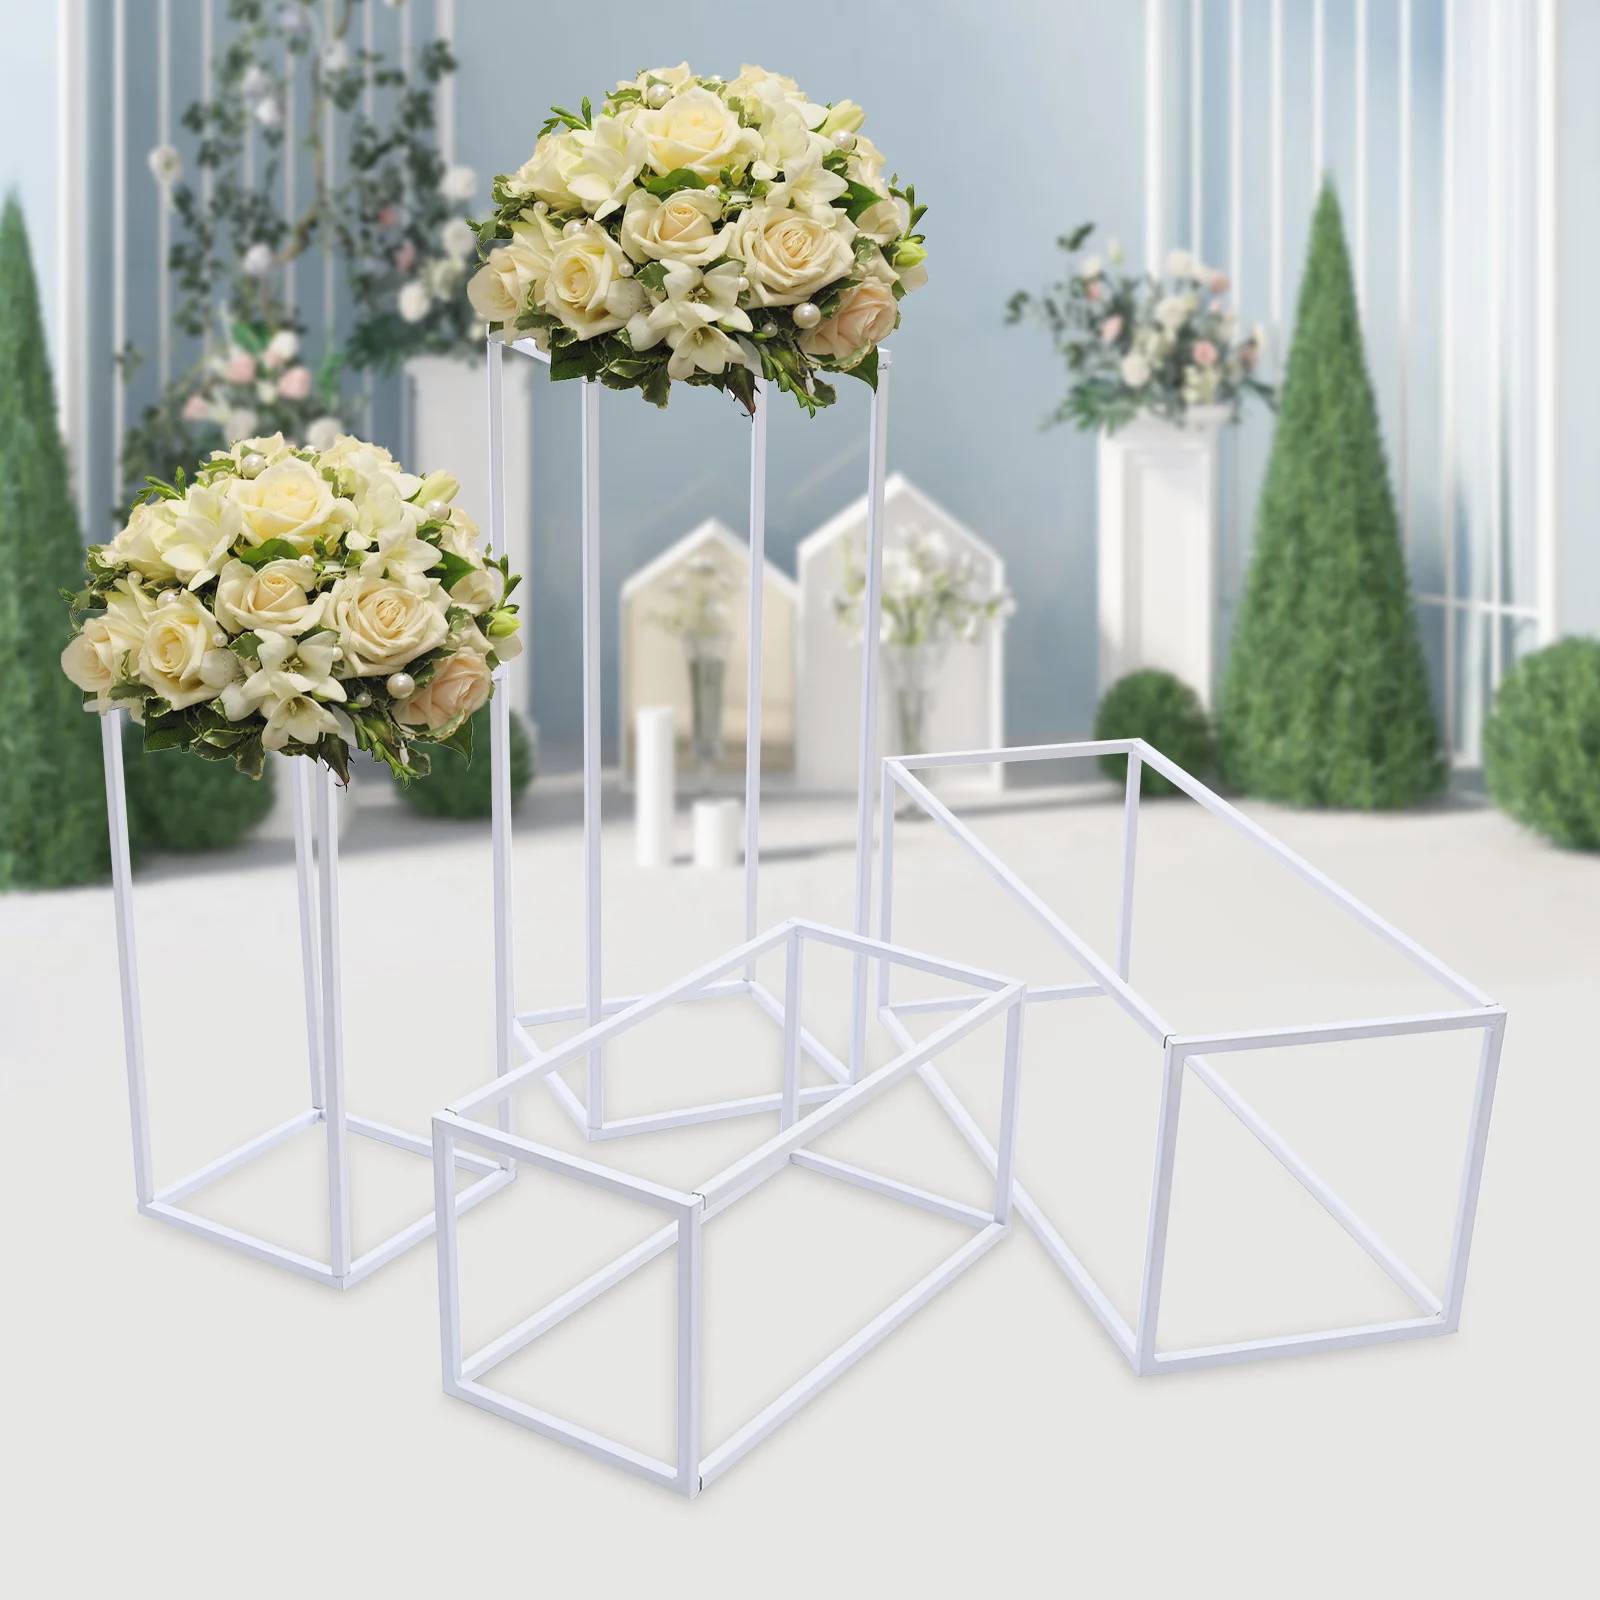 Columna geométrica de Metal blanco para decoración de fondo, soporte de flores, estante para boda, fiesta, 4 piezas, 1 Juego